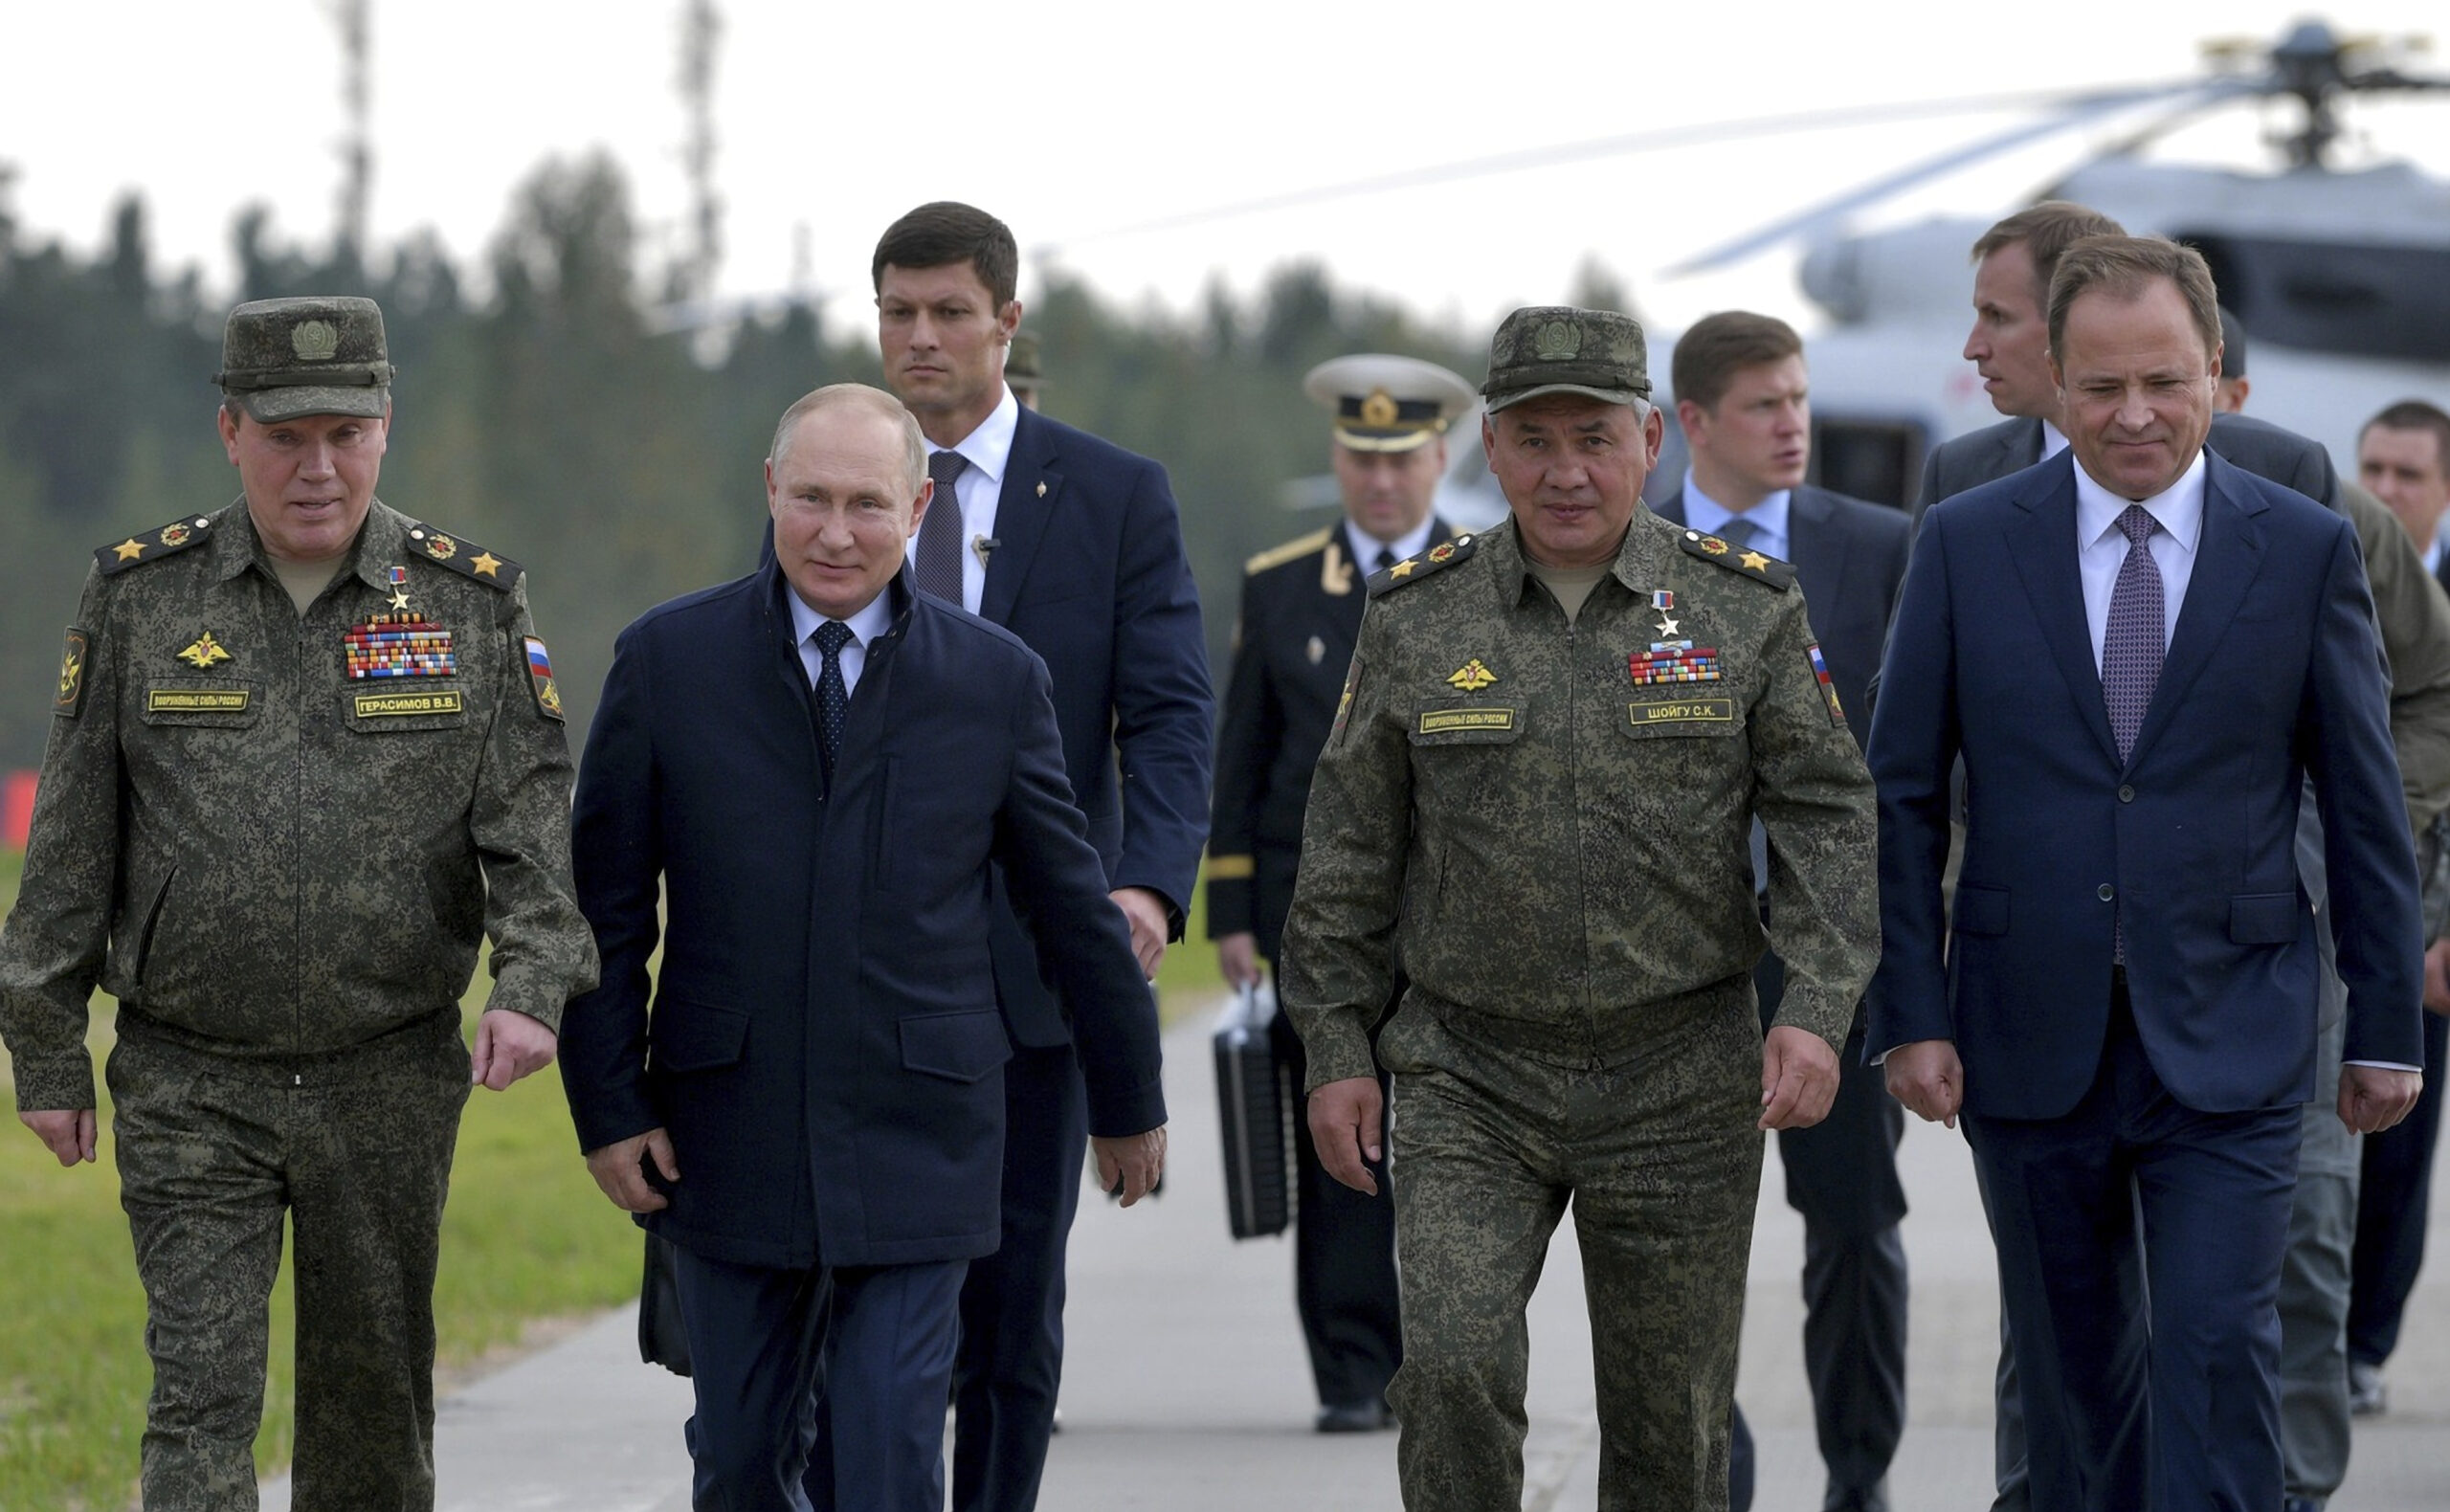 Rusia prueba con éxito un nuevo misil balístico intercontinental